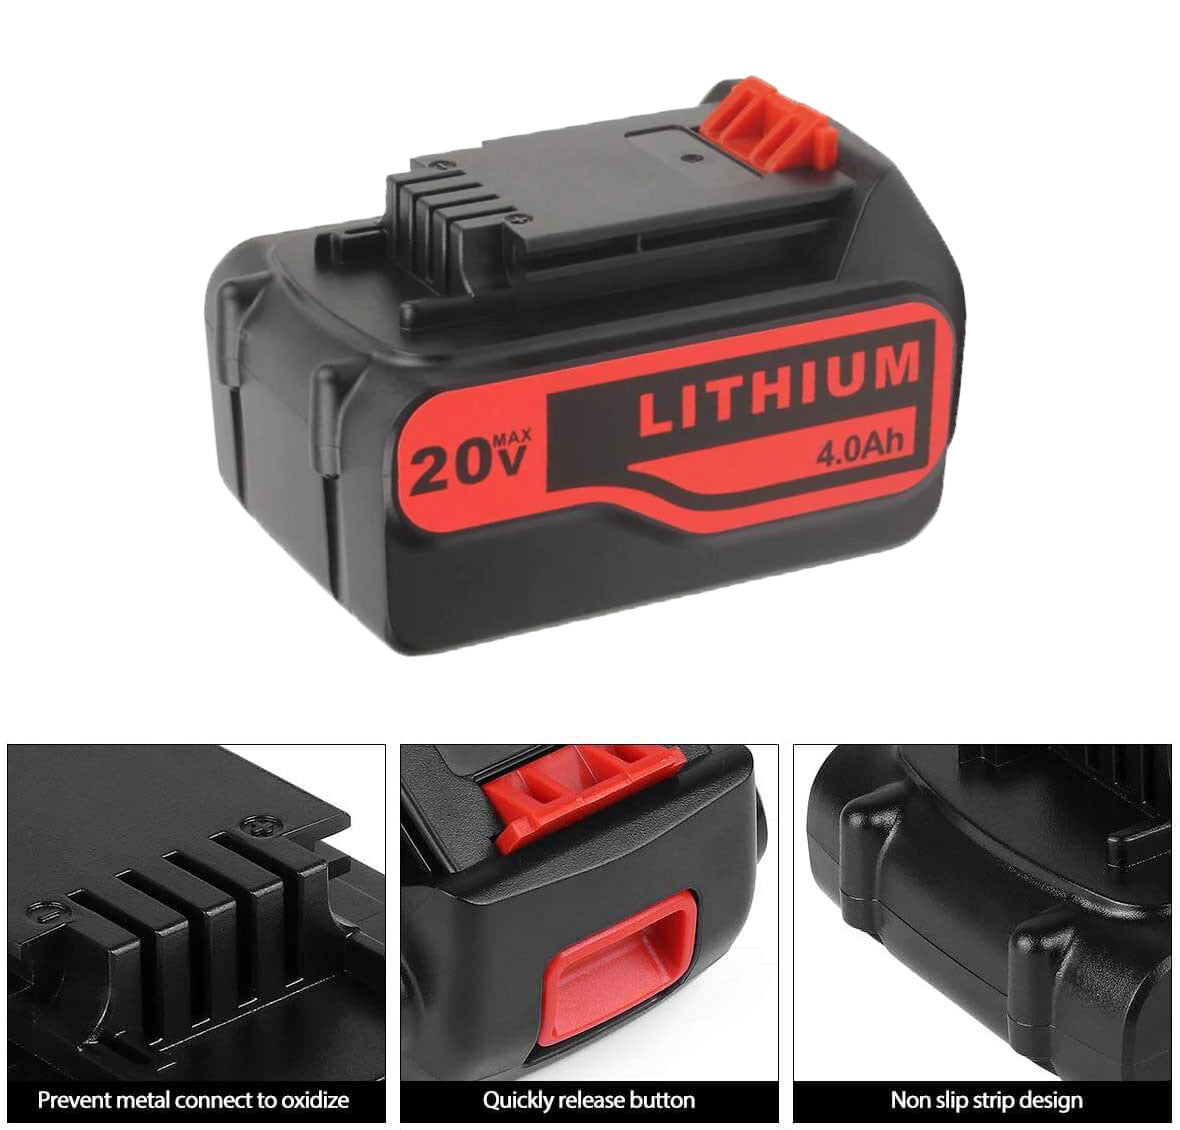 2 Pack 20V Battery 2.0Ah for Black+Decker 20V Max Lithium Battery LBXR20  LB20